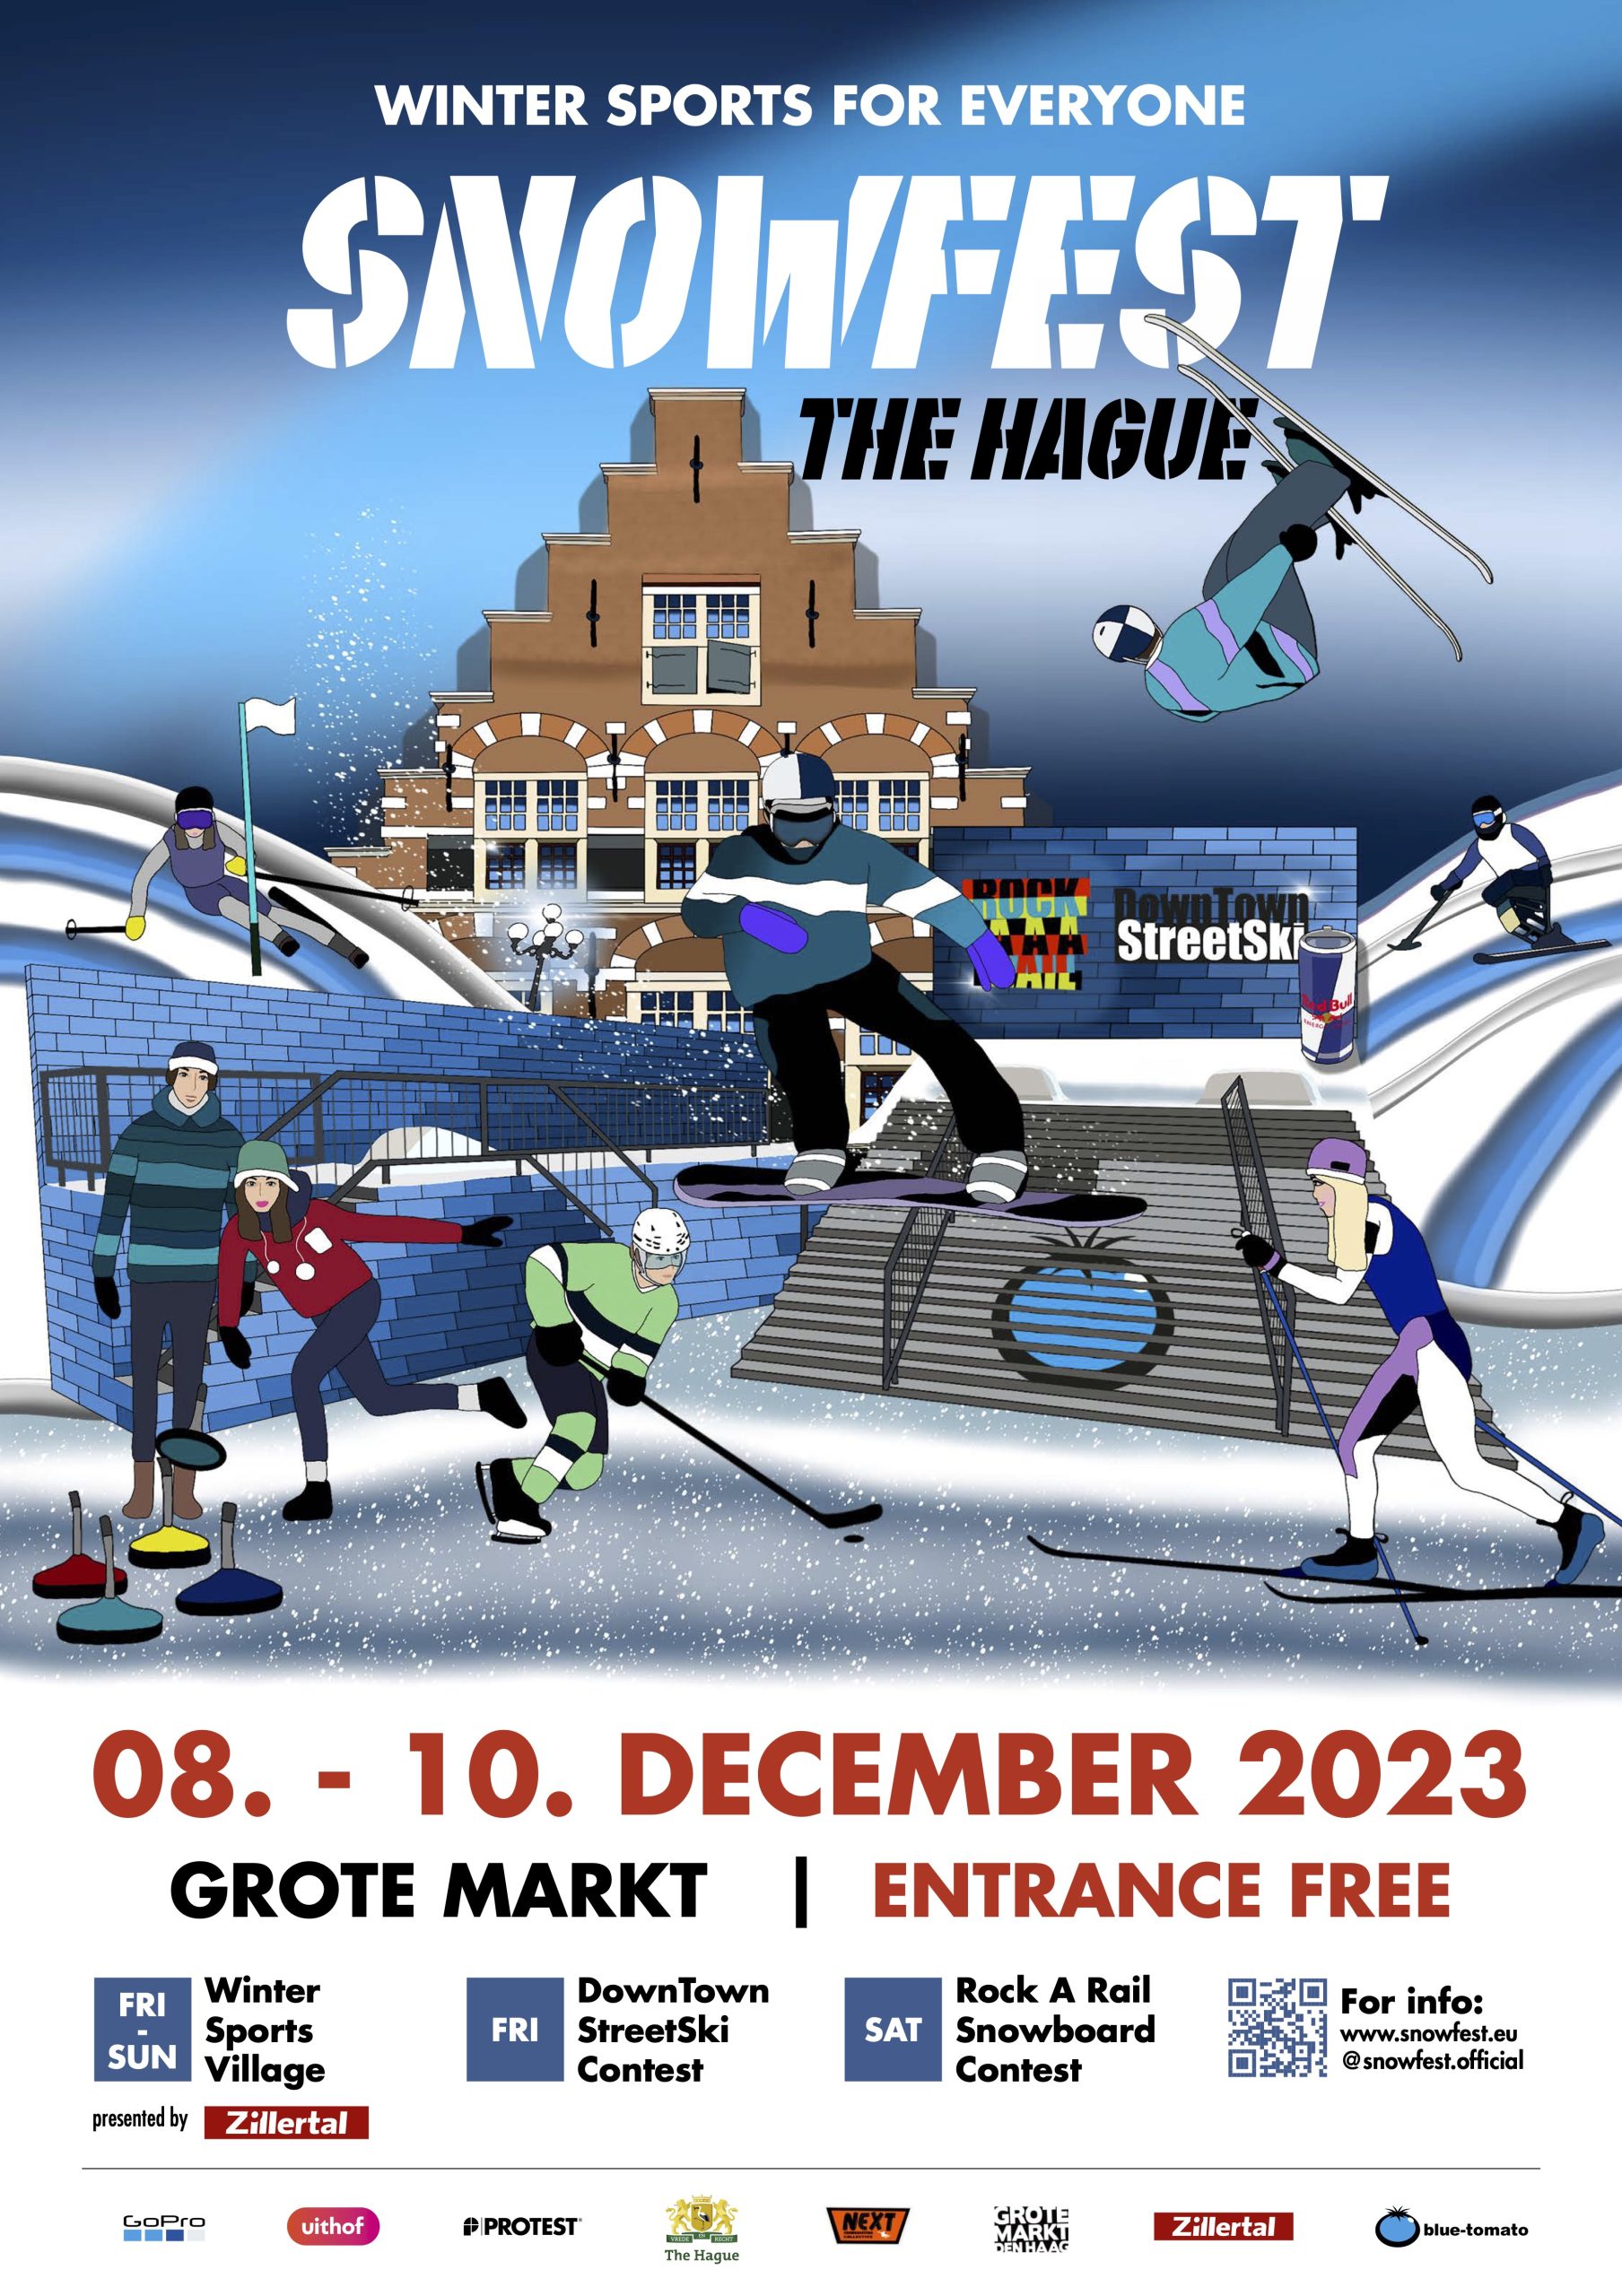 SnowFest feiert niederländische Premiere vom 8. – 10. Dezember 2023